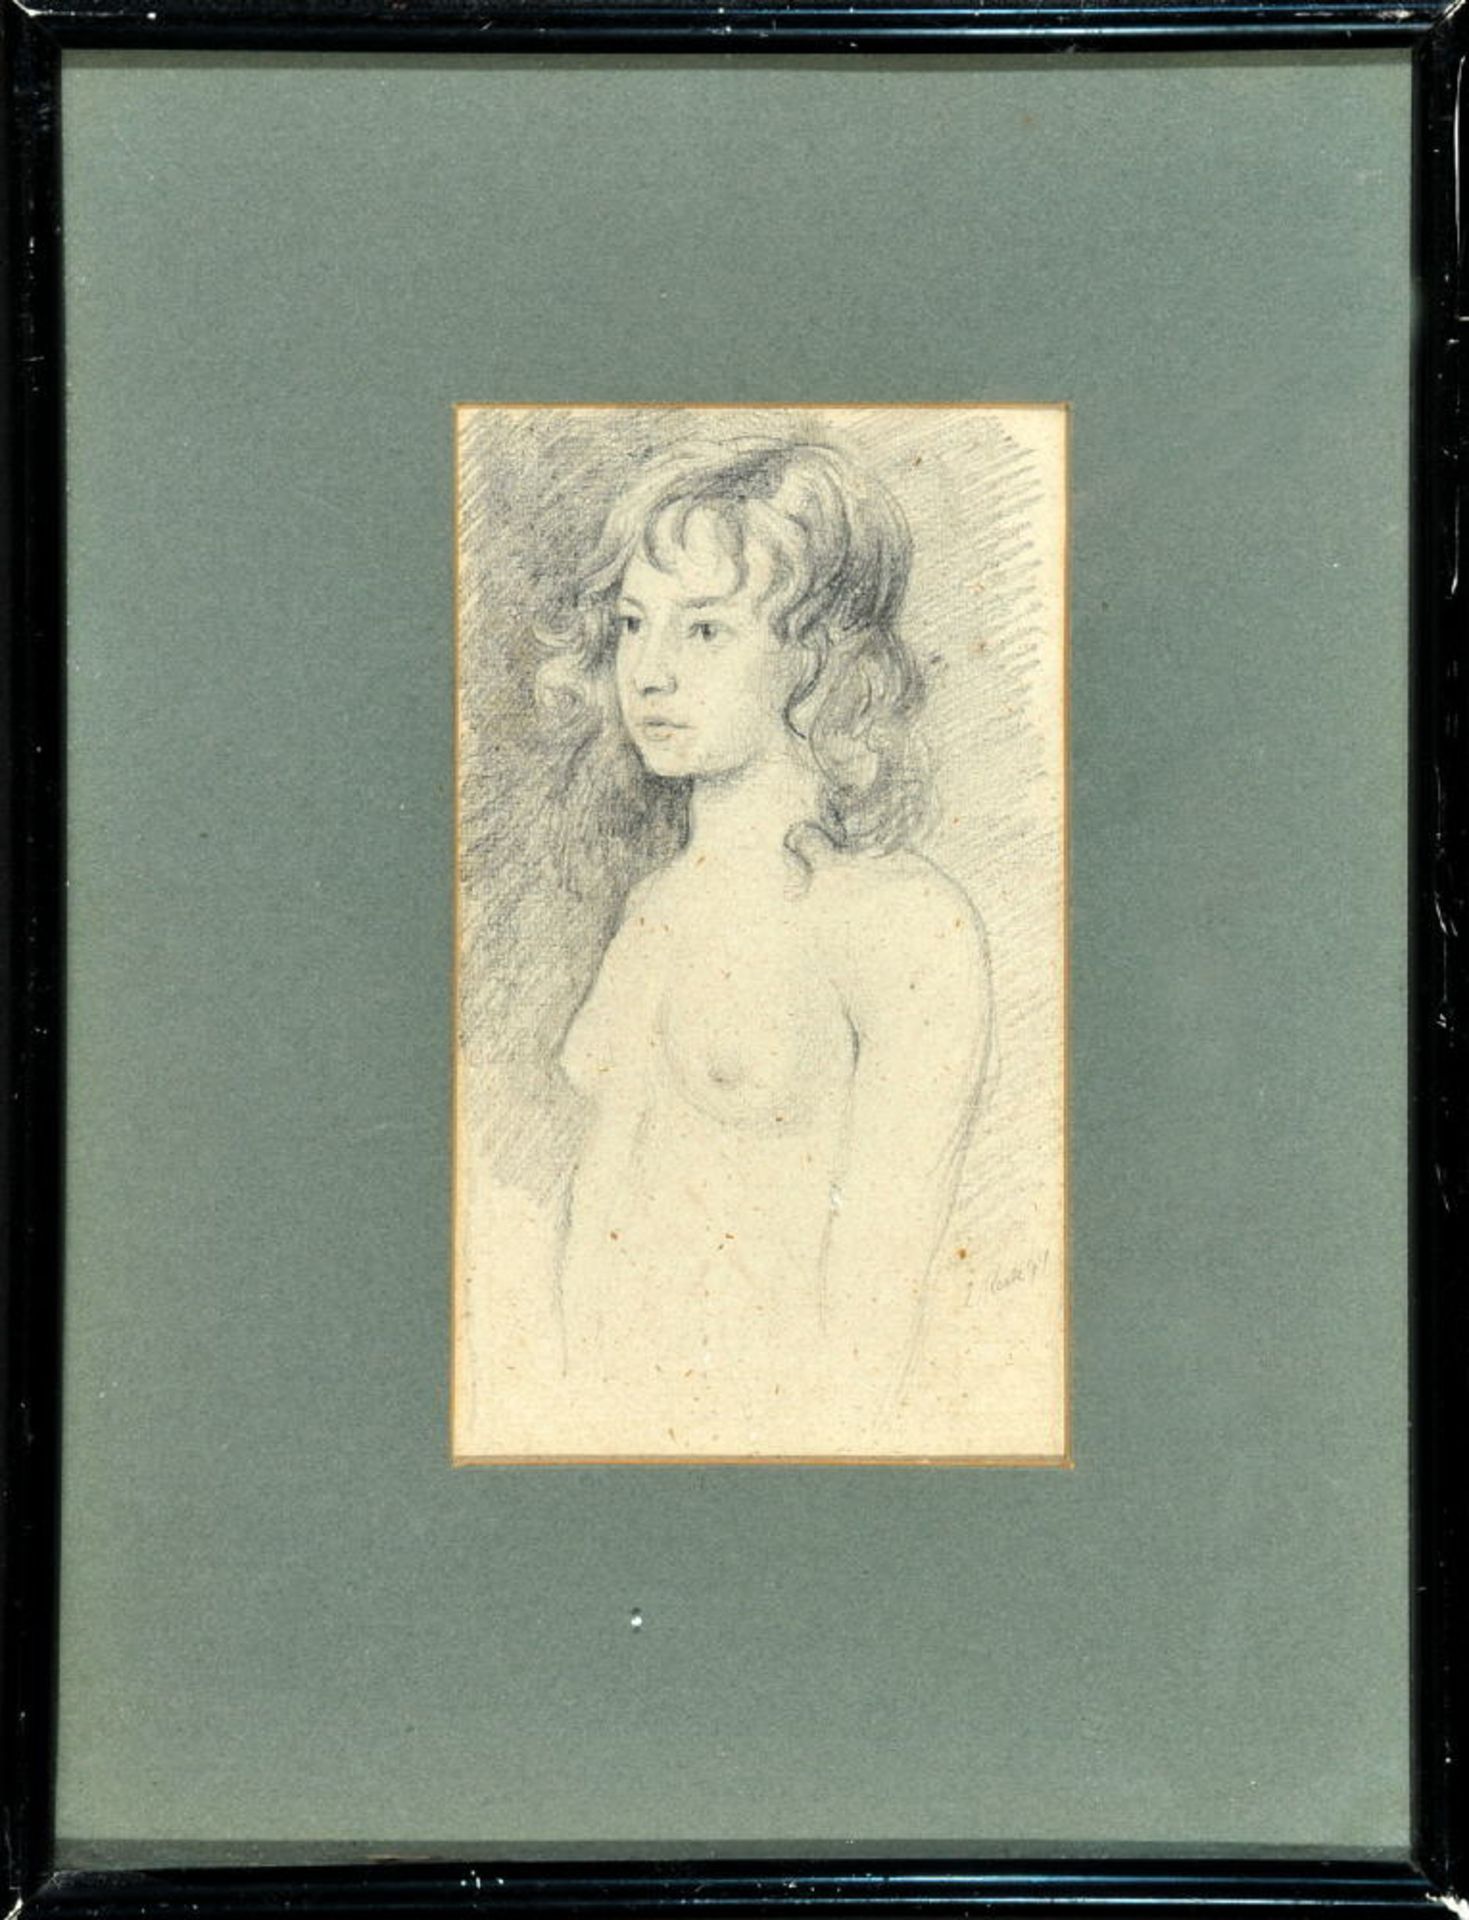 Keck, Emil, 1867 Wildpoldsried - 1935 MünchenBleistiftzeichnung, 17 x 10 cm, " Weiblicher Halbakt ",